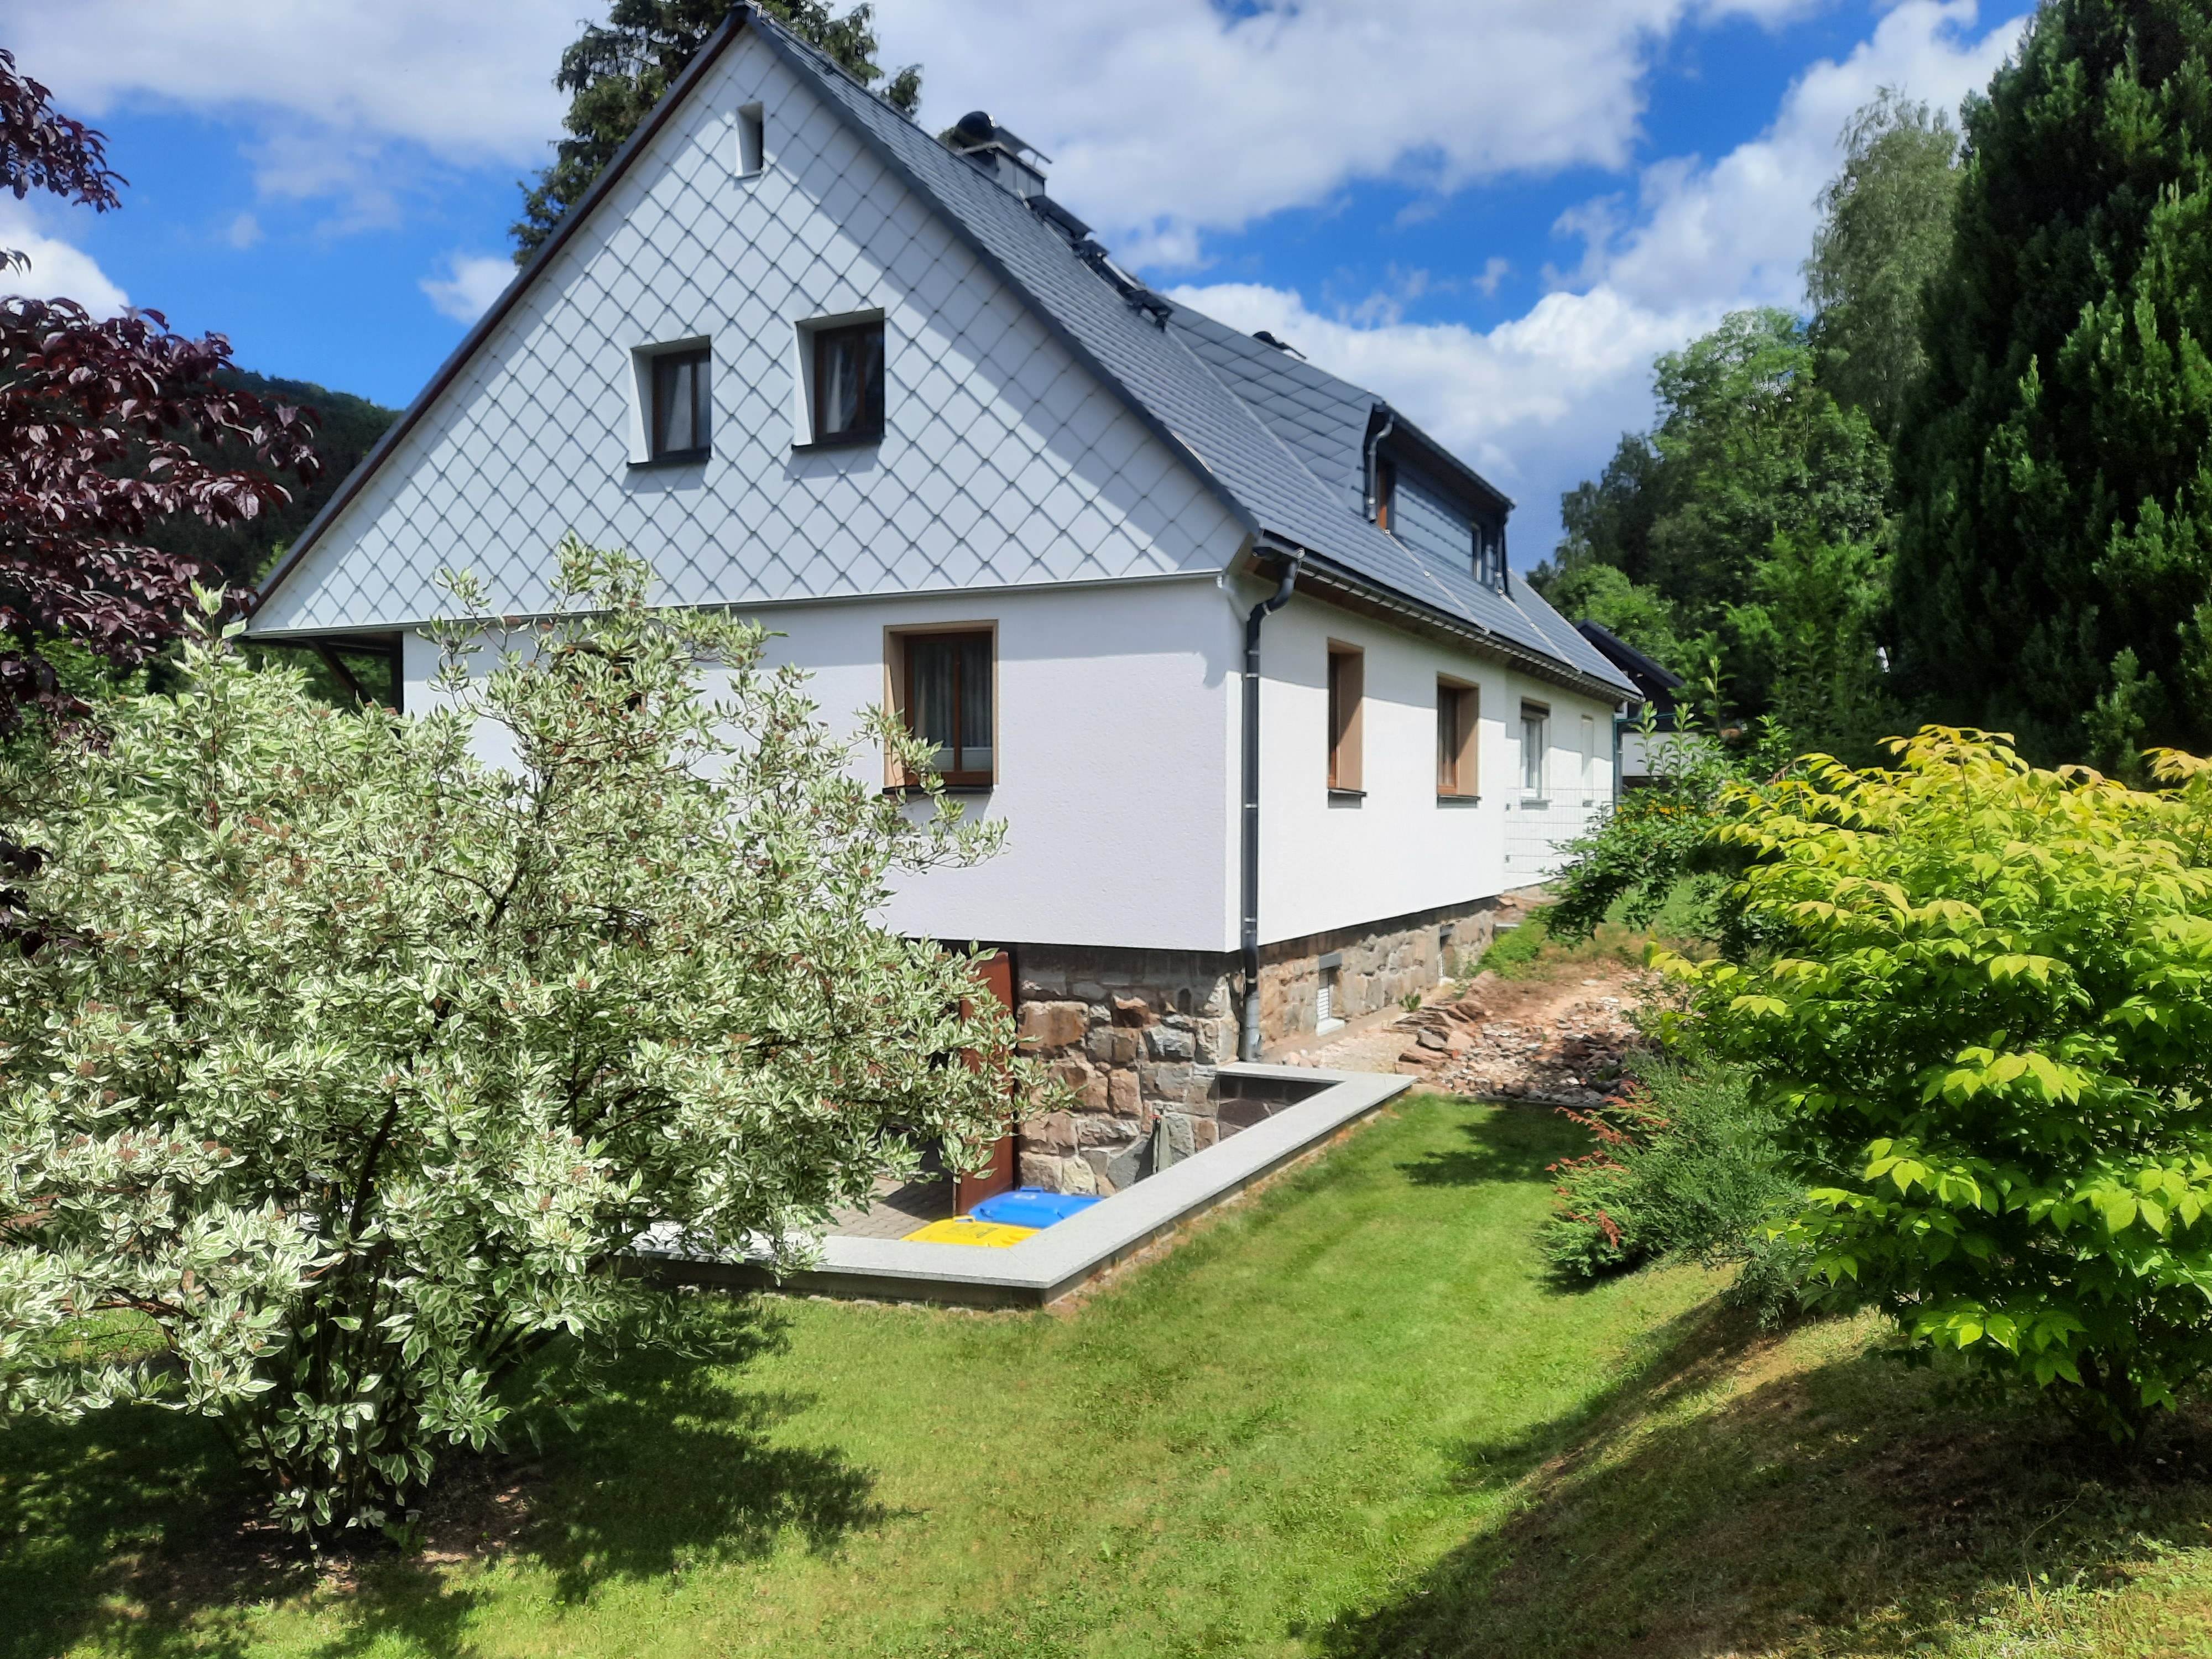  Ferienwohnung Tannenweg  in Rechenberg-Bienenmühle-Holzhau bei Sayda